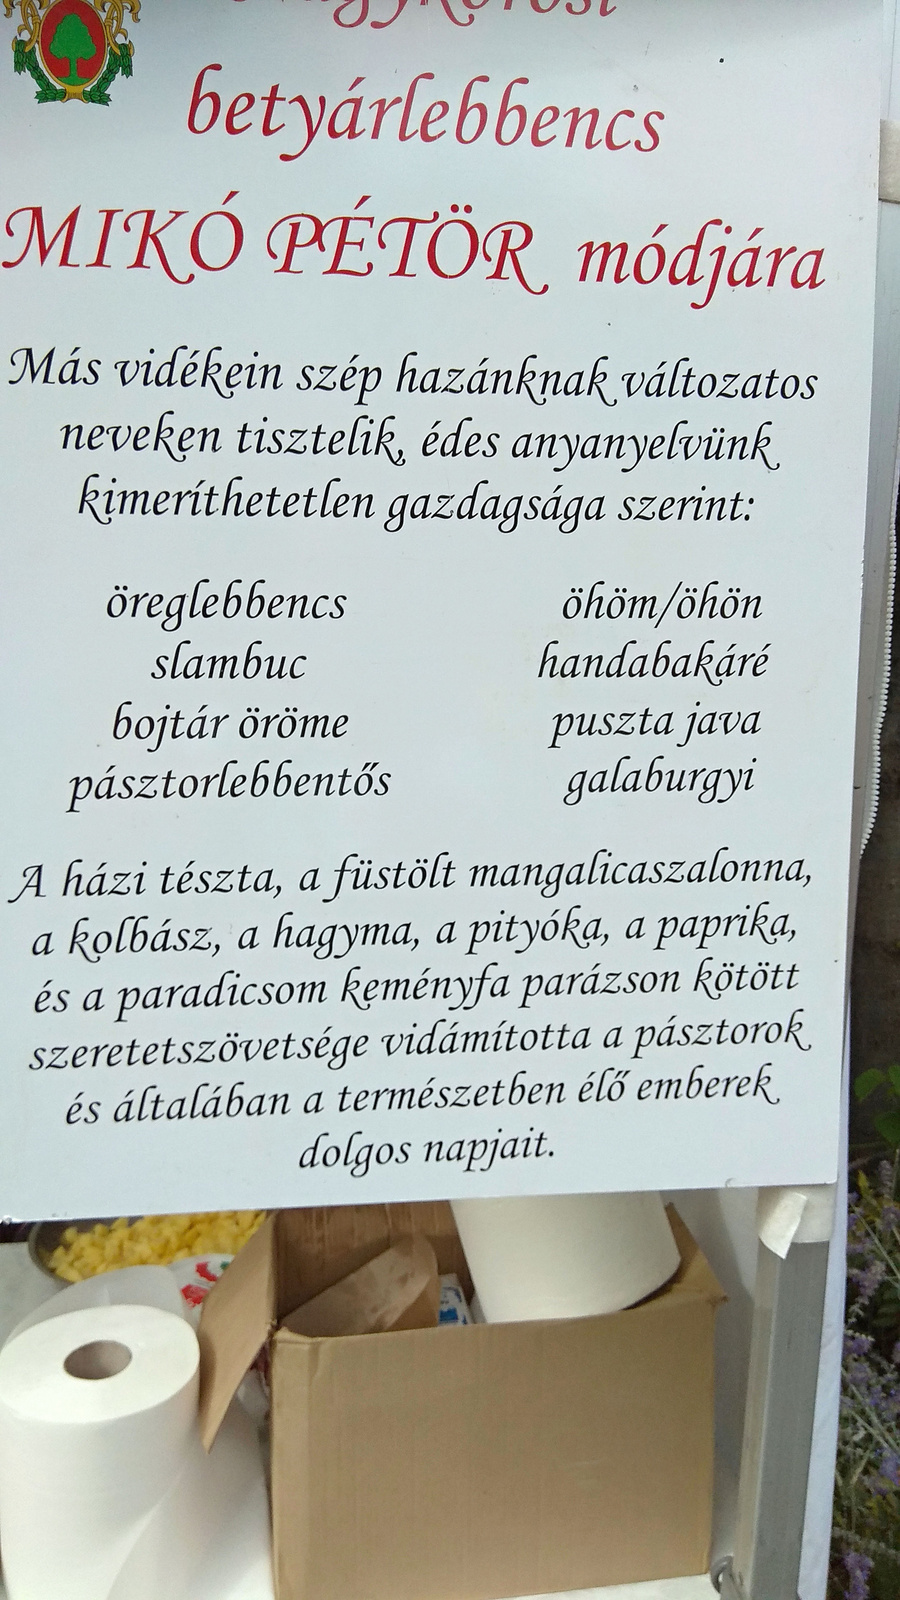 Aug 20 - MIU - Giccsös röcöpt a magyarosch ízek uccájában